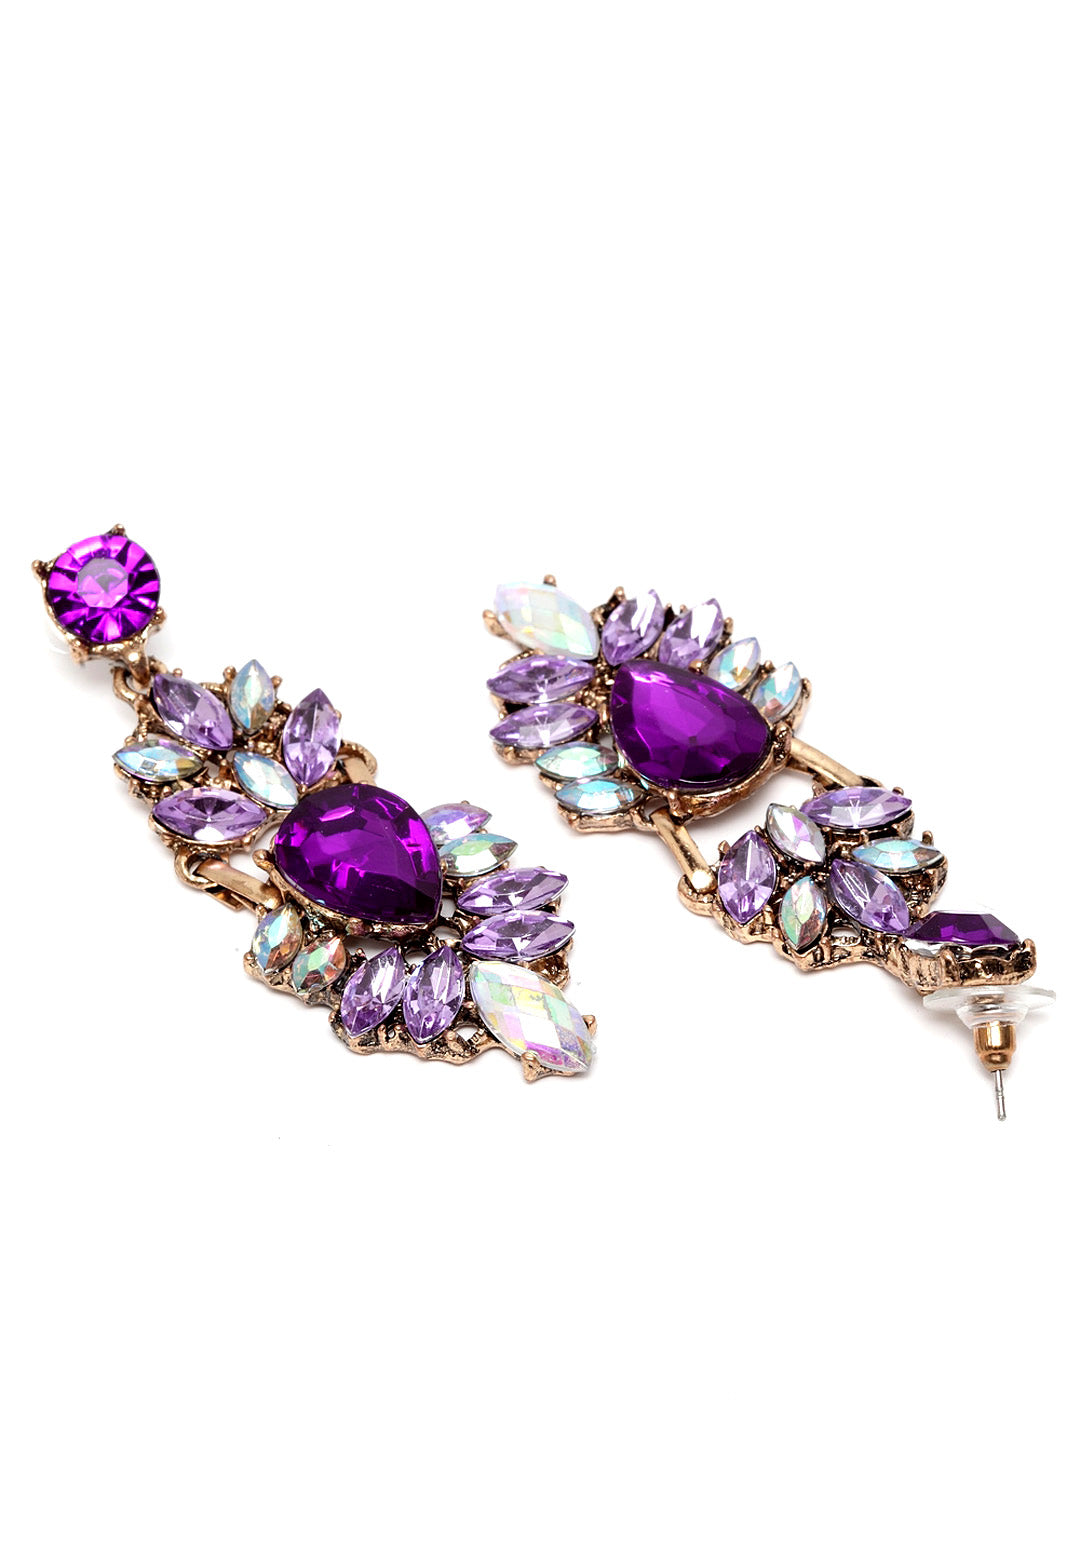 Mystery Purple Vintage Statement Earrings